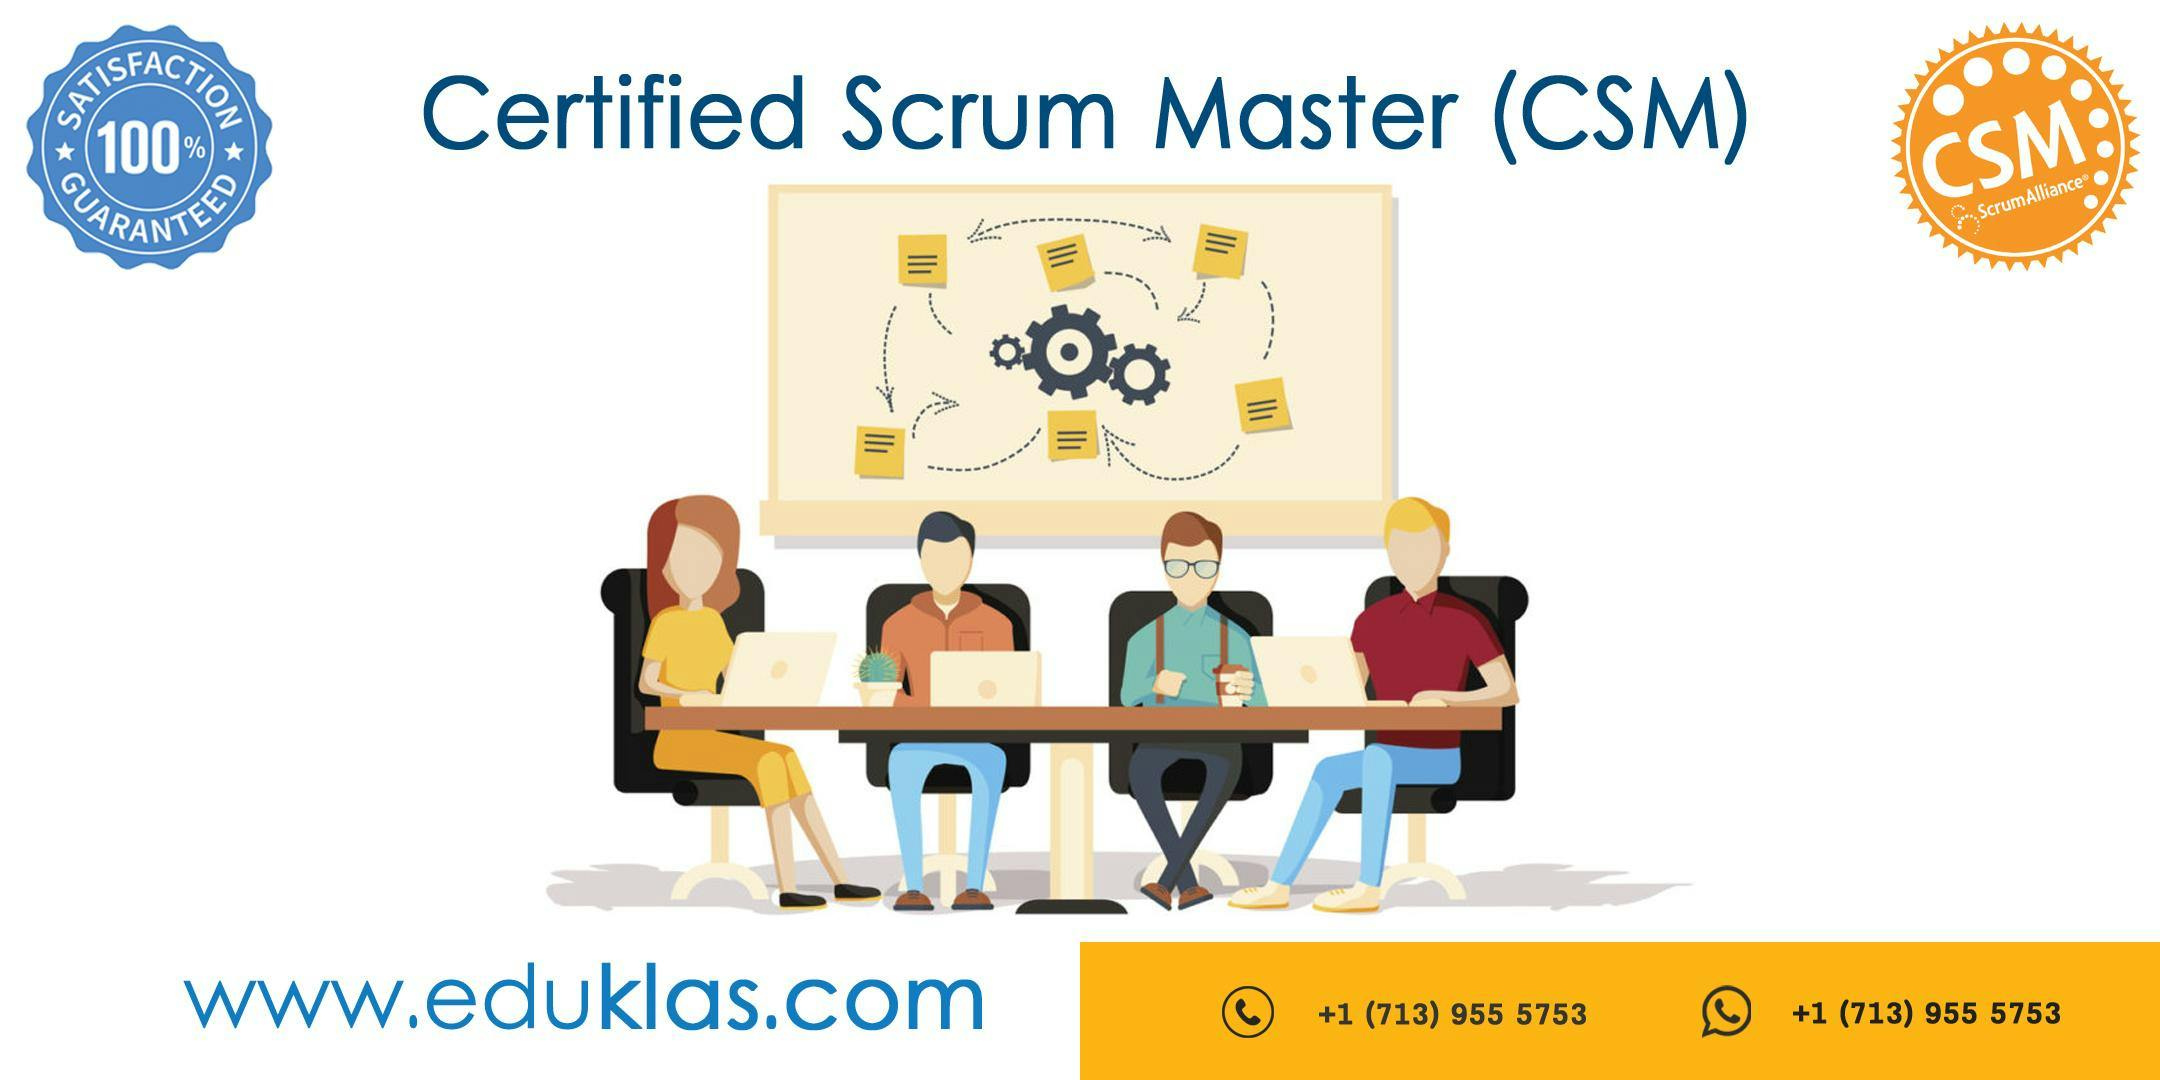 Scrum Master Certification | CSM Training | CSM Certification Workshop | Certified Scrum Master (CSM) Training in Denver, CO | Eduklas